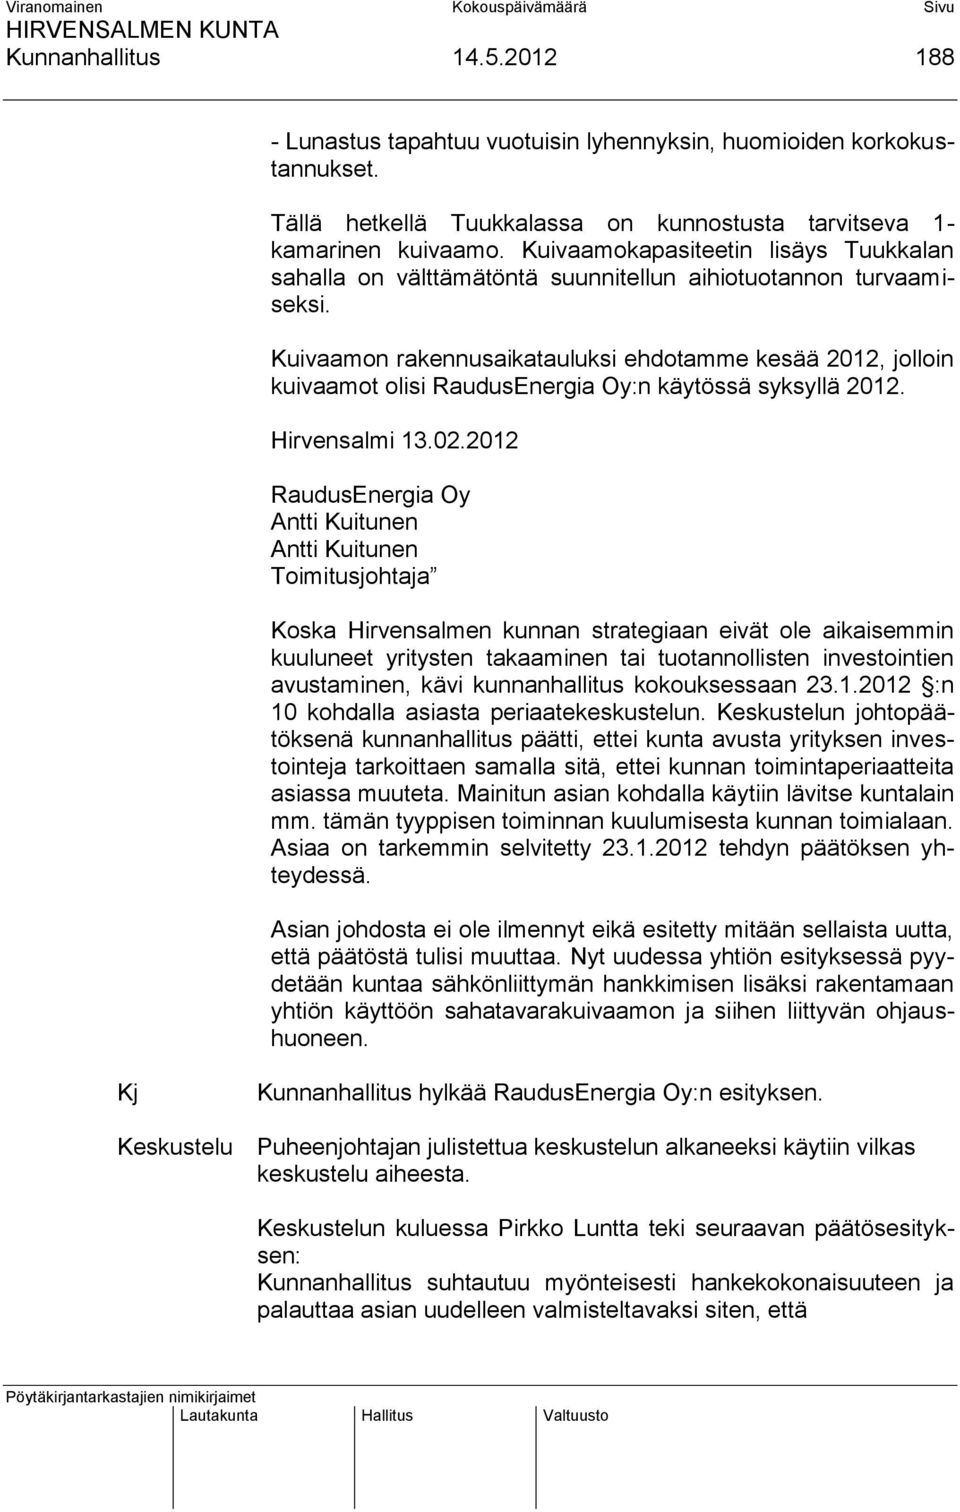 Kuivaamon rakennusaikatauluksi ehdotamme kesää 2012, jolloin kuivaamot olisi RaudusEnergia Oy:n käytössä syksyllä 2012. Hirvensalmi 13.02.